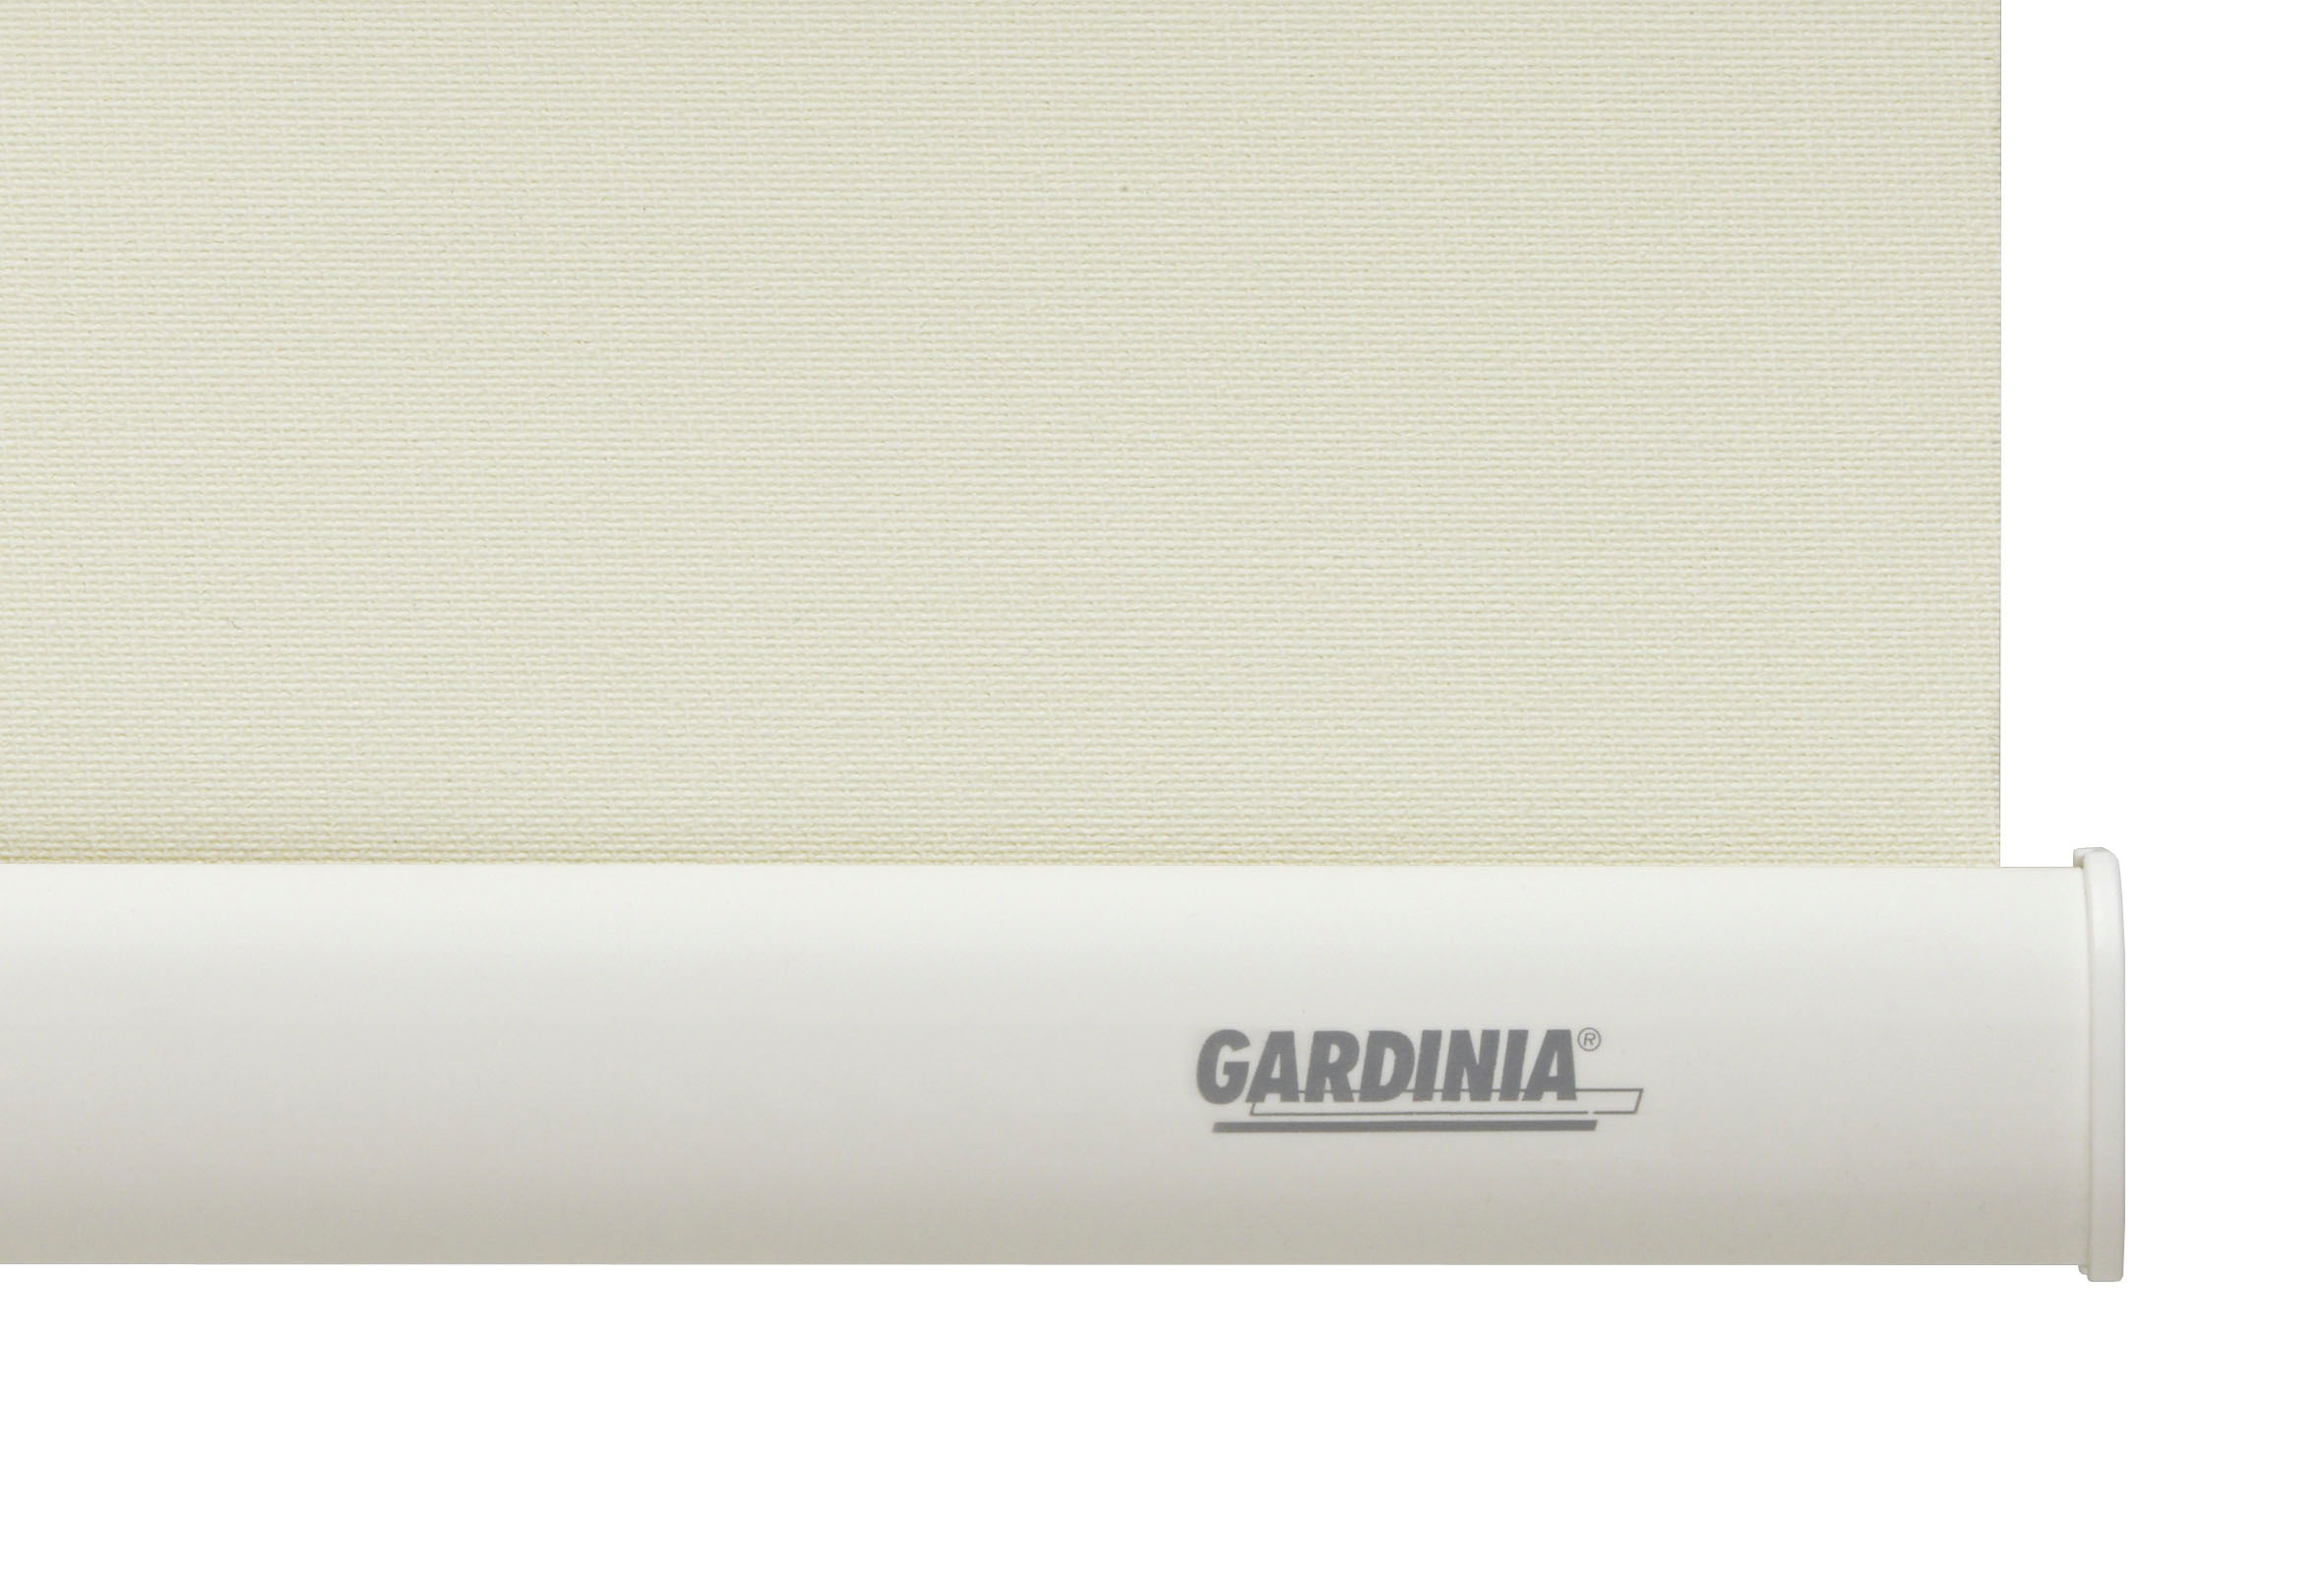 GARDINIA Seitenzugrollo »Uni-Rollo - Thermo Energiesparend«, verdunkelnd,  energiesparend, Abschlussprofil in weiß bequem und schnell bestellen